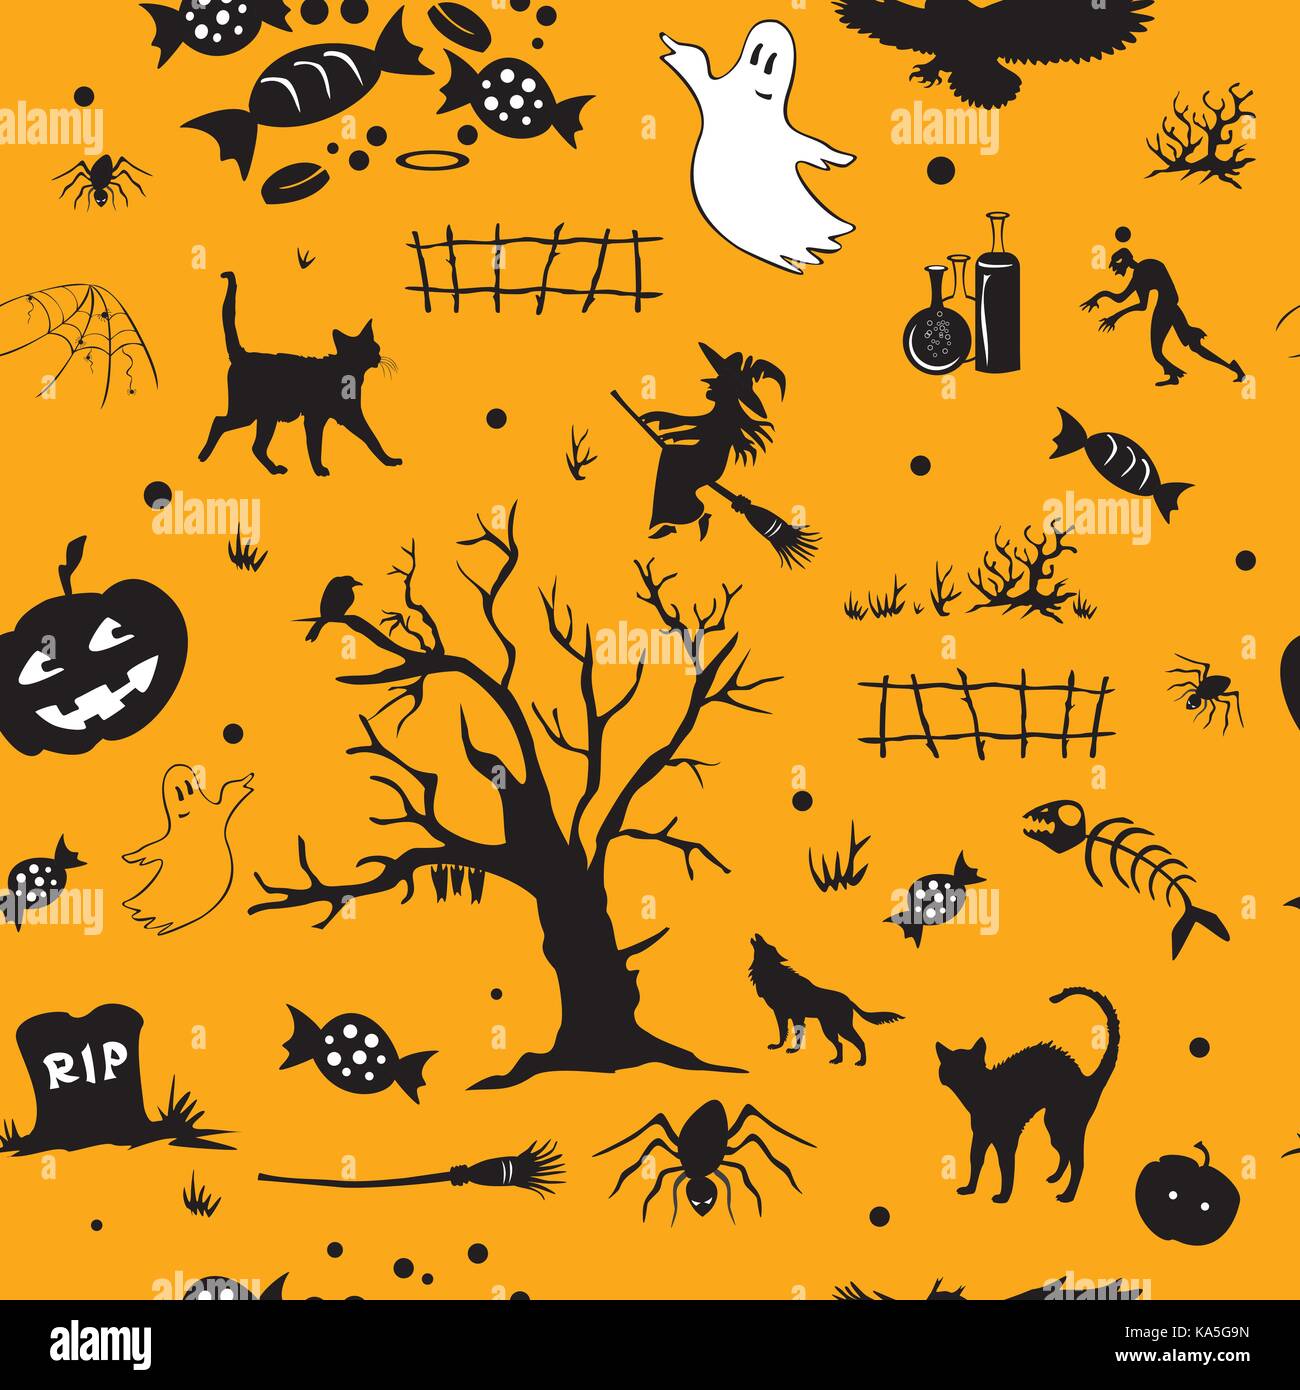 Vecteur halloween modèle transparent avec ghost, tombeau, Black Cat, bonbons, arbre, araignée, citrouille, sorcière, sur fond orange Illustration de Vecteur